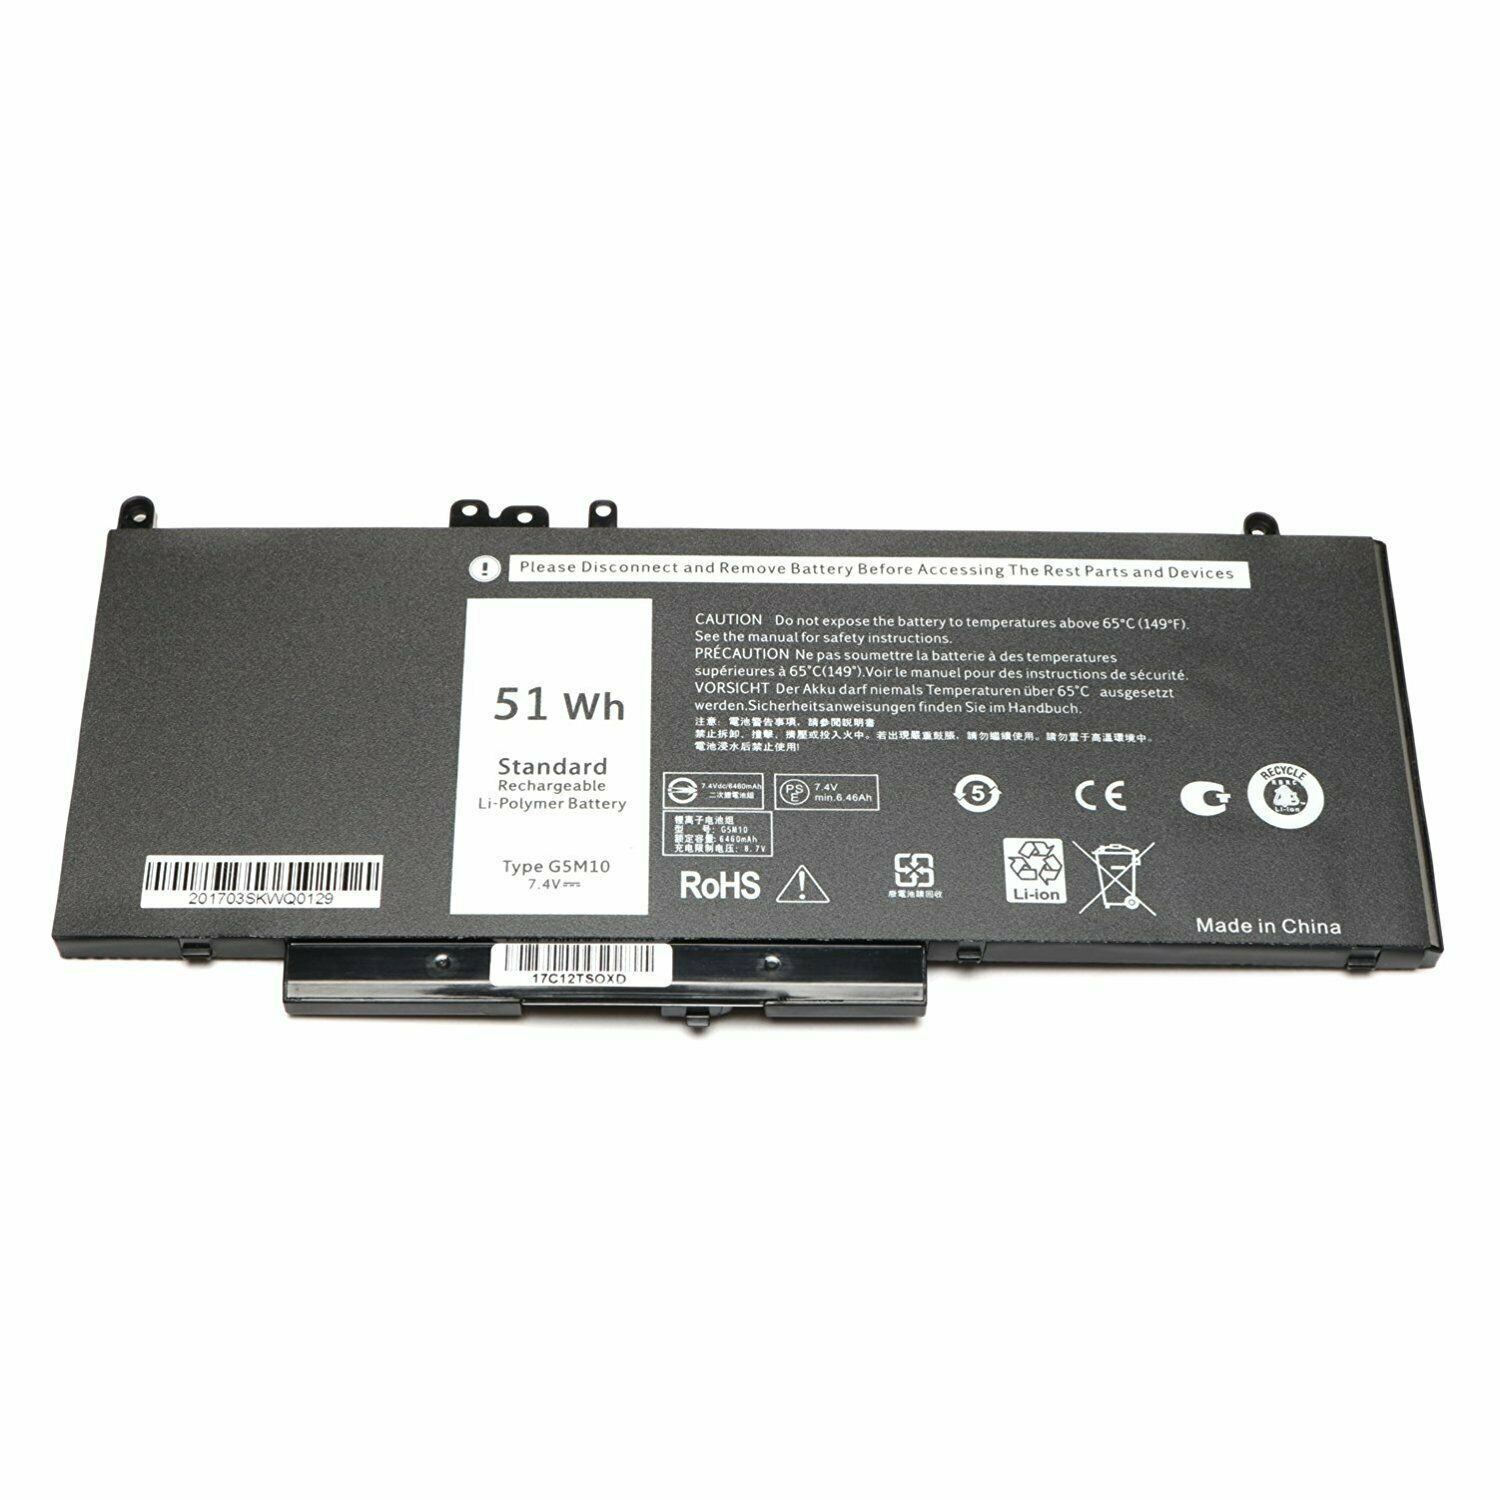 G5M10 WYJC2 1KY05 Dell Latitude E5450 E5470 E5550 E5570 kompatibelt batterier - Trykk på bildet for å lukke